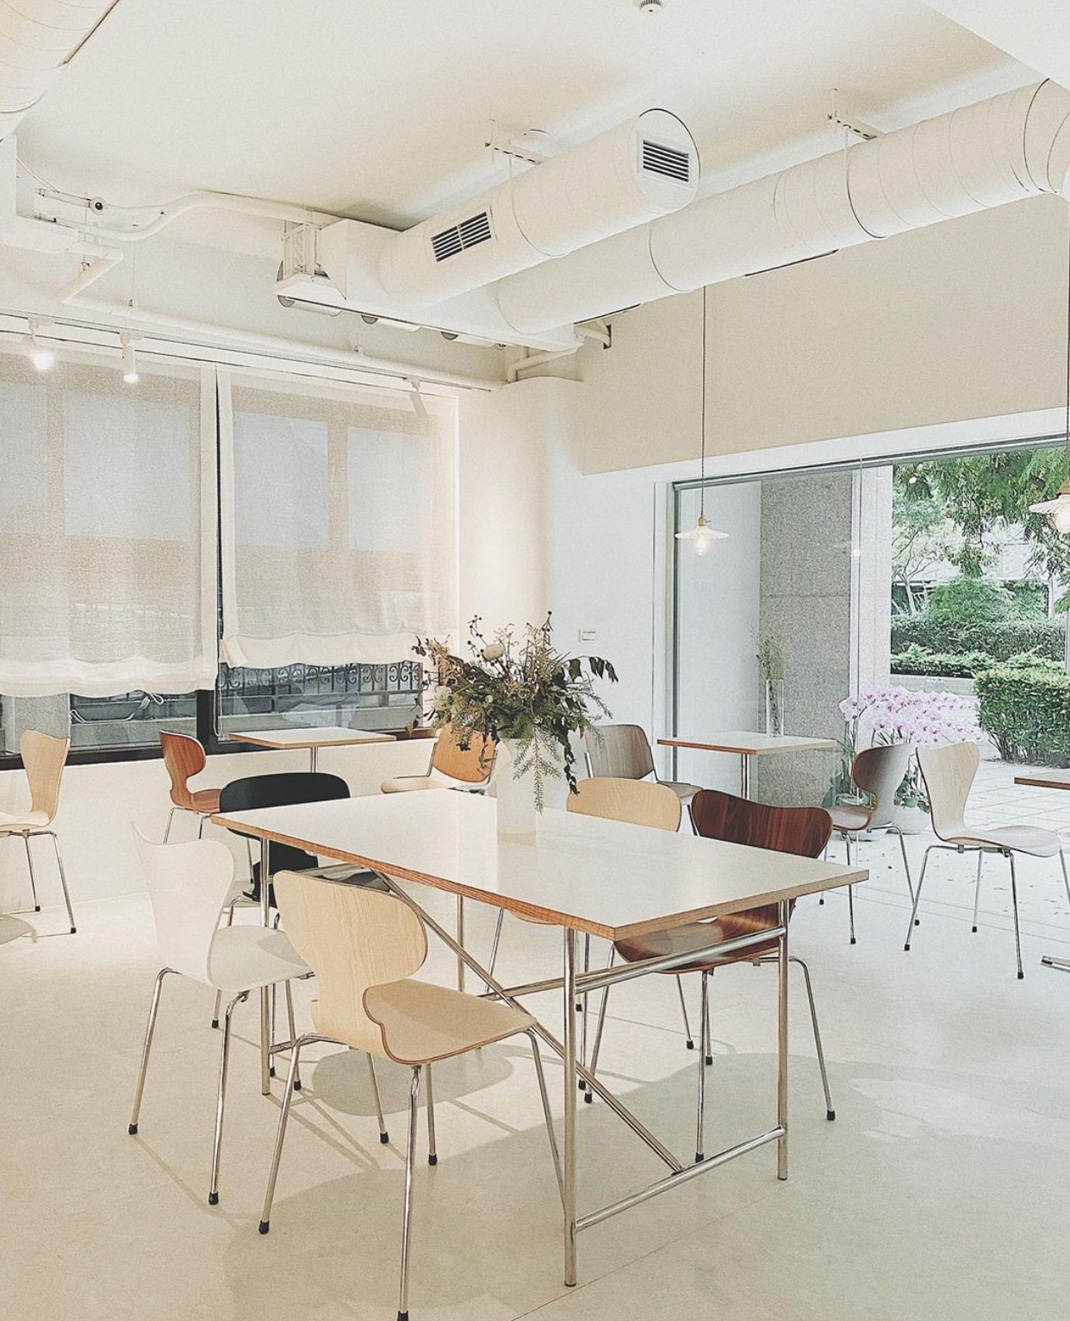 咖啡店Nueve Studio 台湾 咖啡店 白色空间 logo设计 vi设计 空间设计